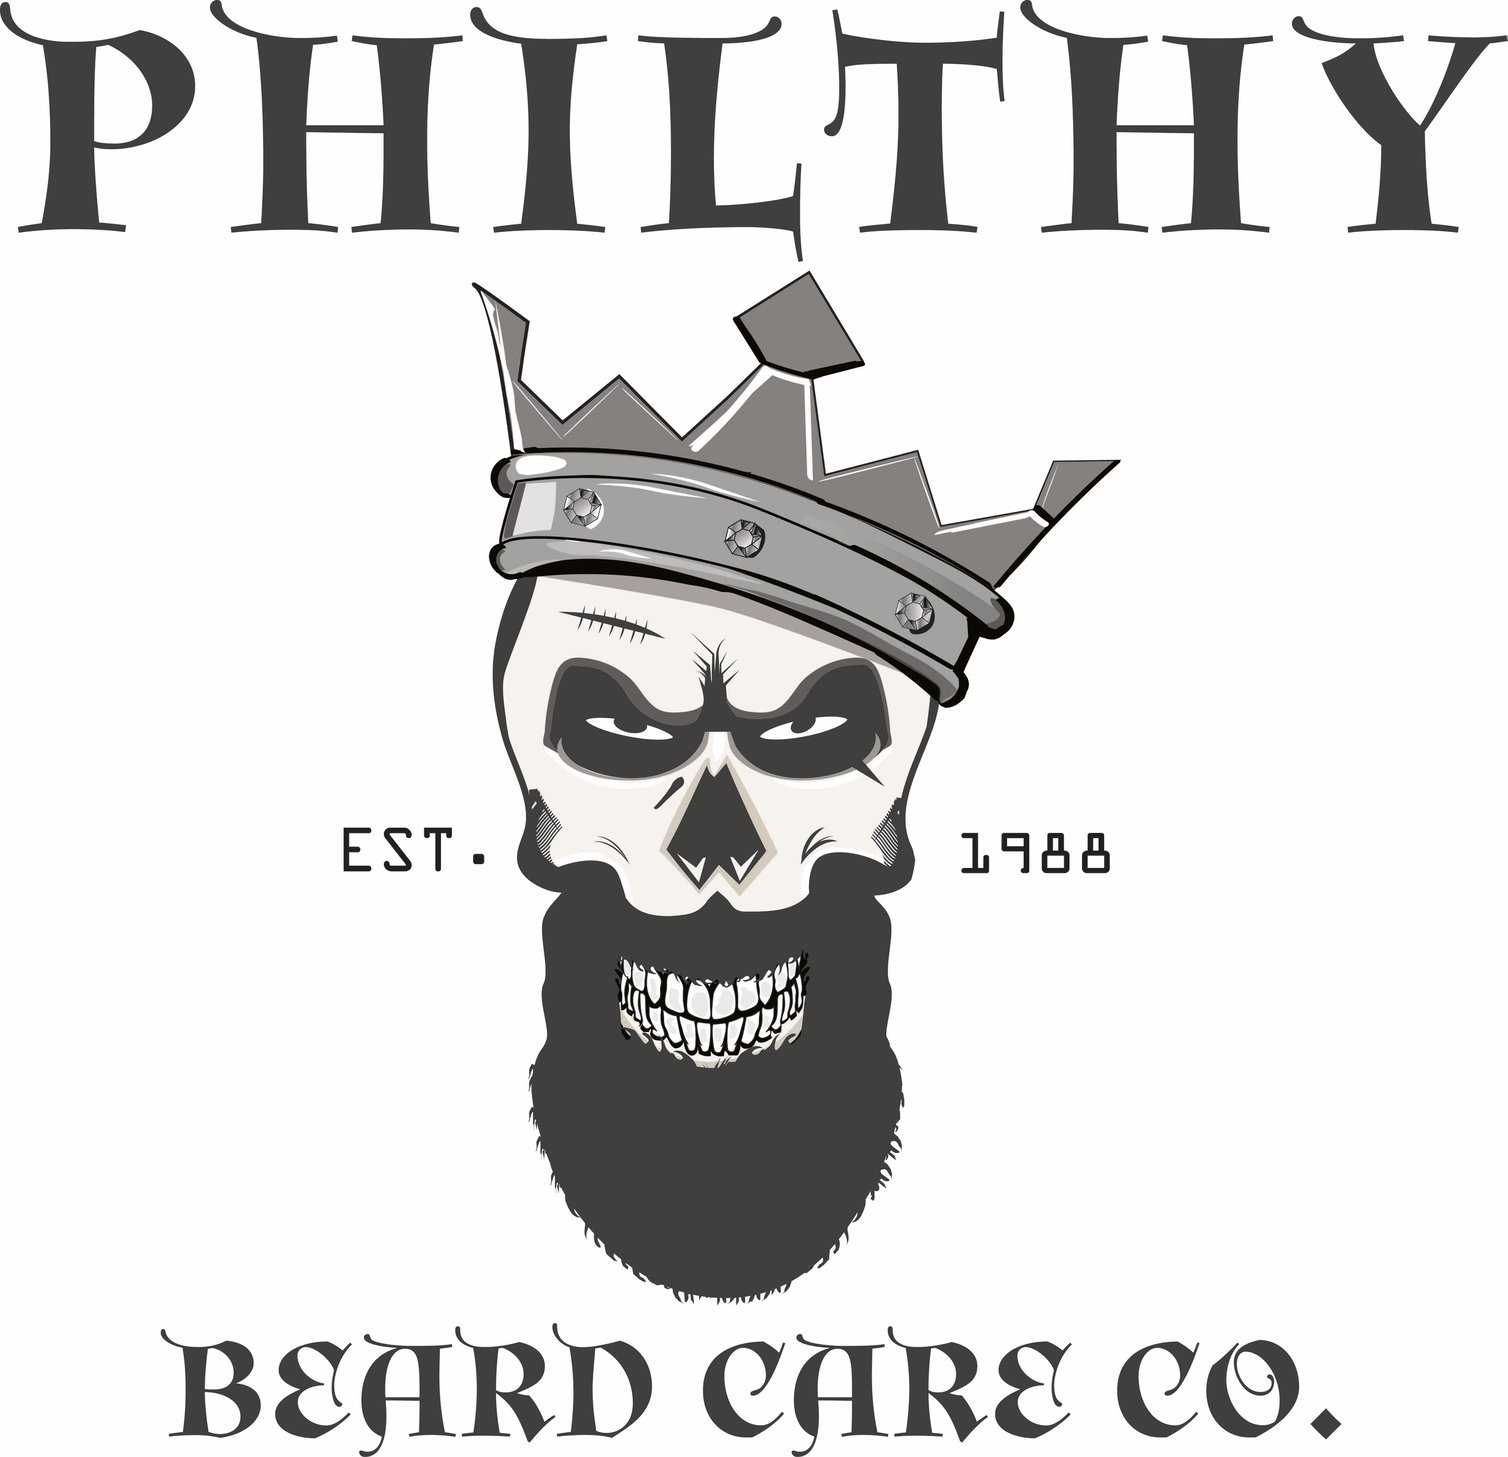 Philthy Beard Care Company 